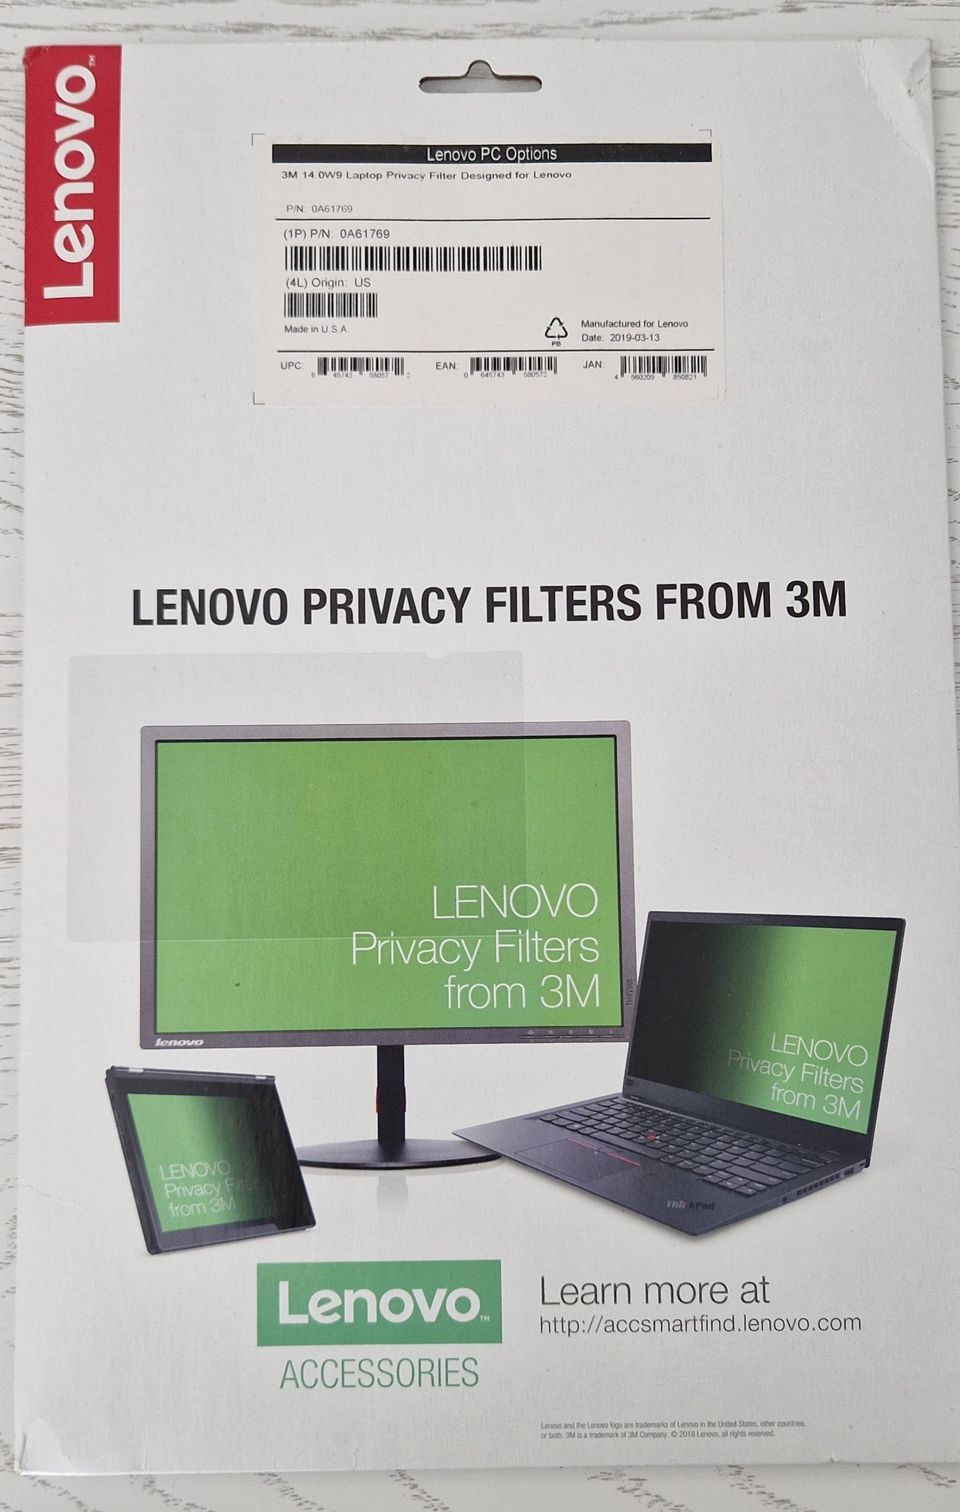 Lenovo Privacy Filter 14.0W9